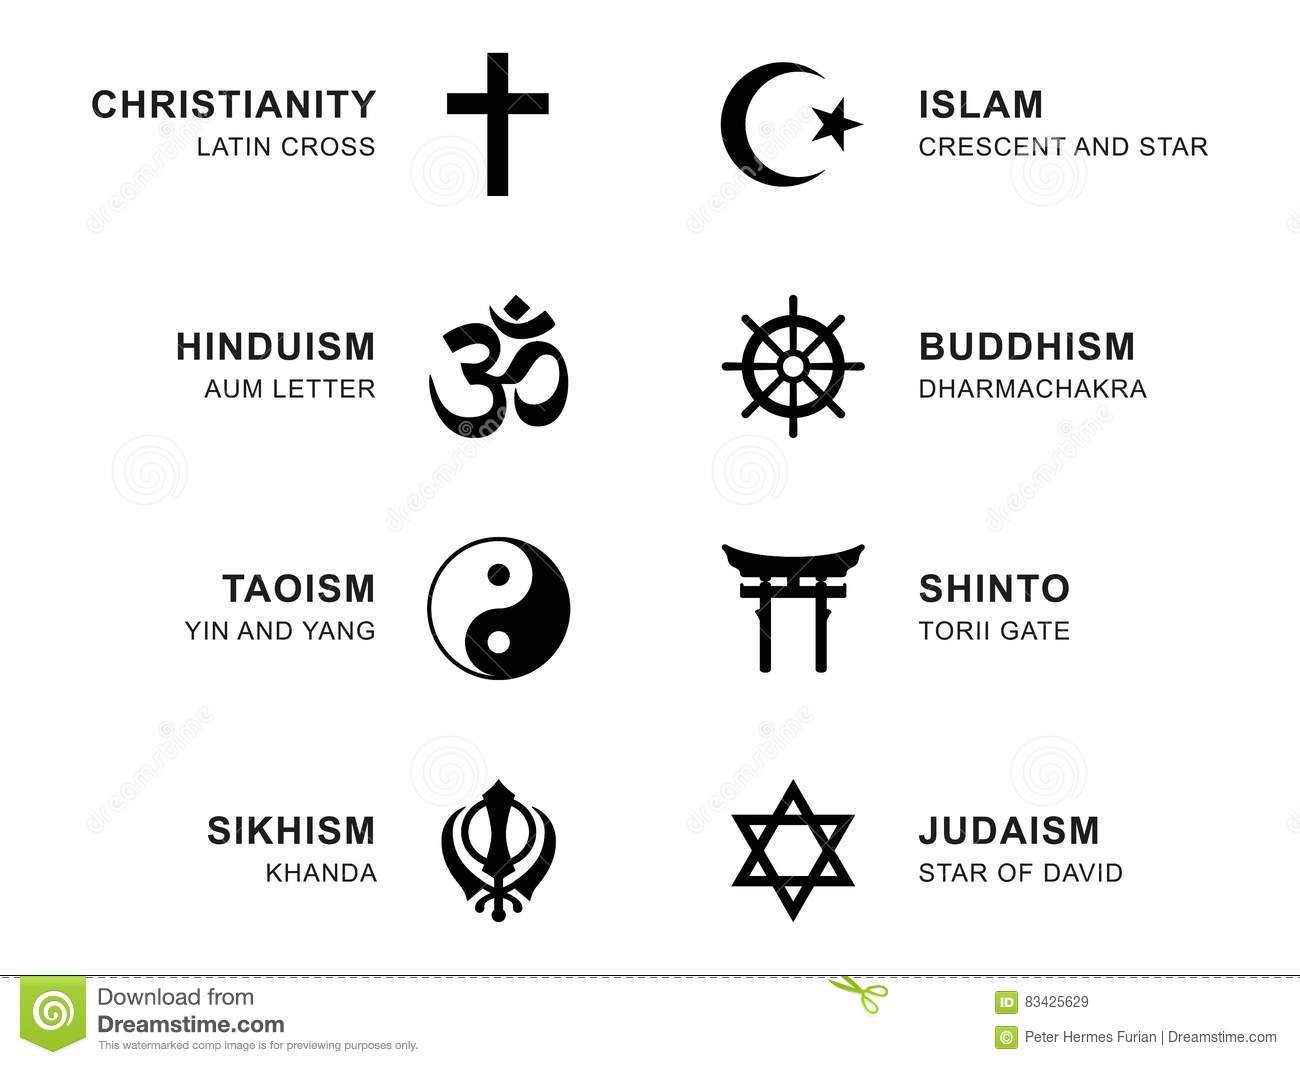 Христианство, ислам и буддизм как основы мировых религиозных культур